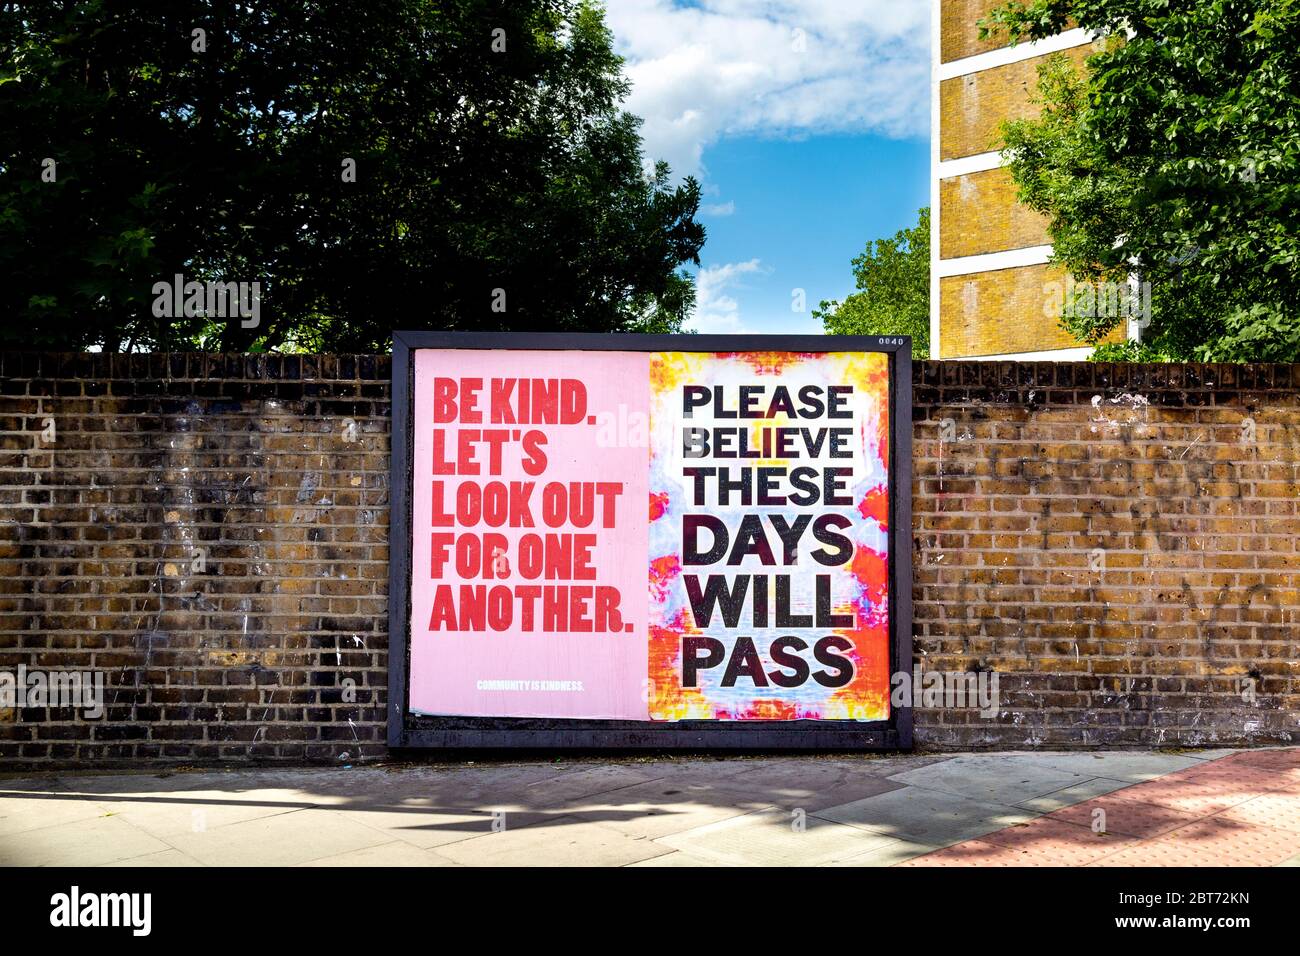 22. Mai 2020 London, UK - Zeichen der Ermutigung in Stoke Newington während des Ausbruchs der Coronavirus-Pandemie: "Seid freundlich, lasst uns aufeinander achten" und "Bitte glaubt, dass diese Tage vergehen werden" Stockfoto